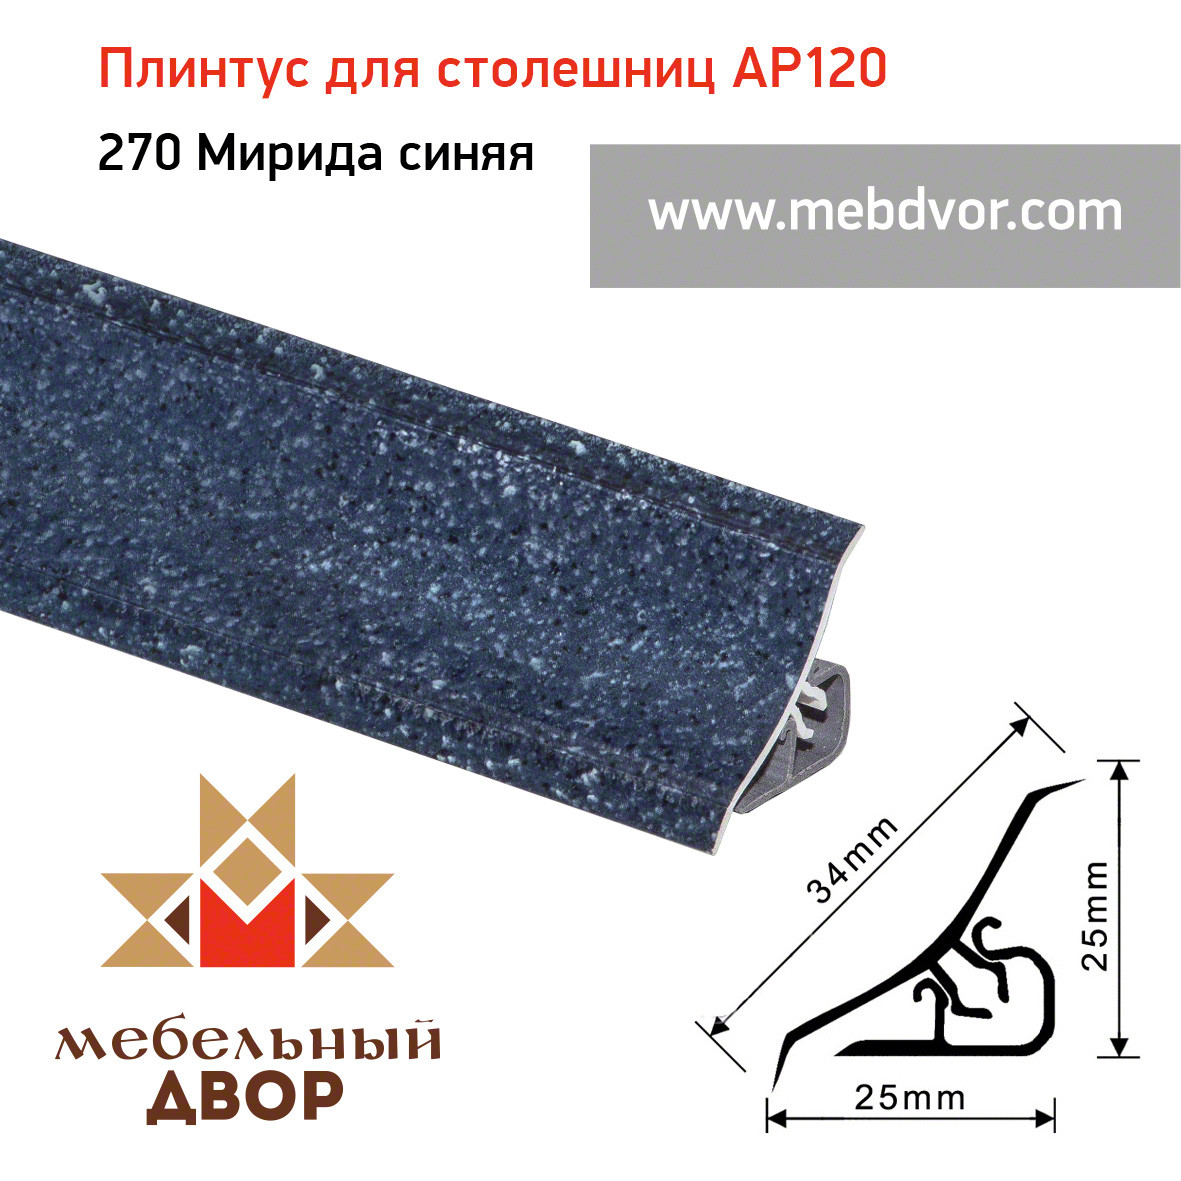 Плинтус для столешниц AP120 (270_Мирида синяя), 3000 mm